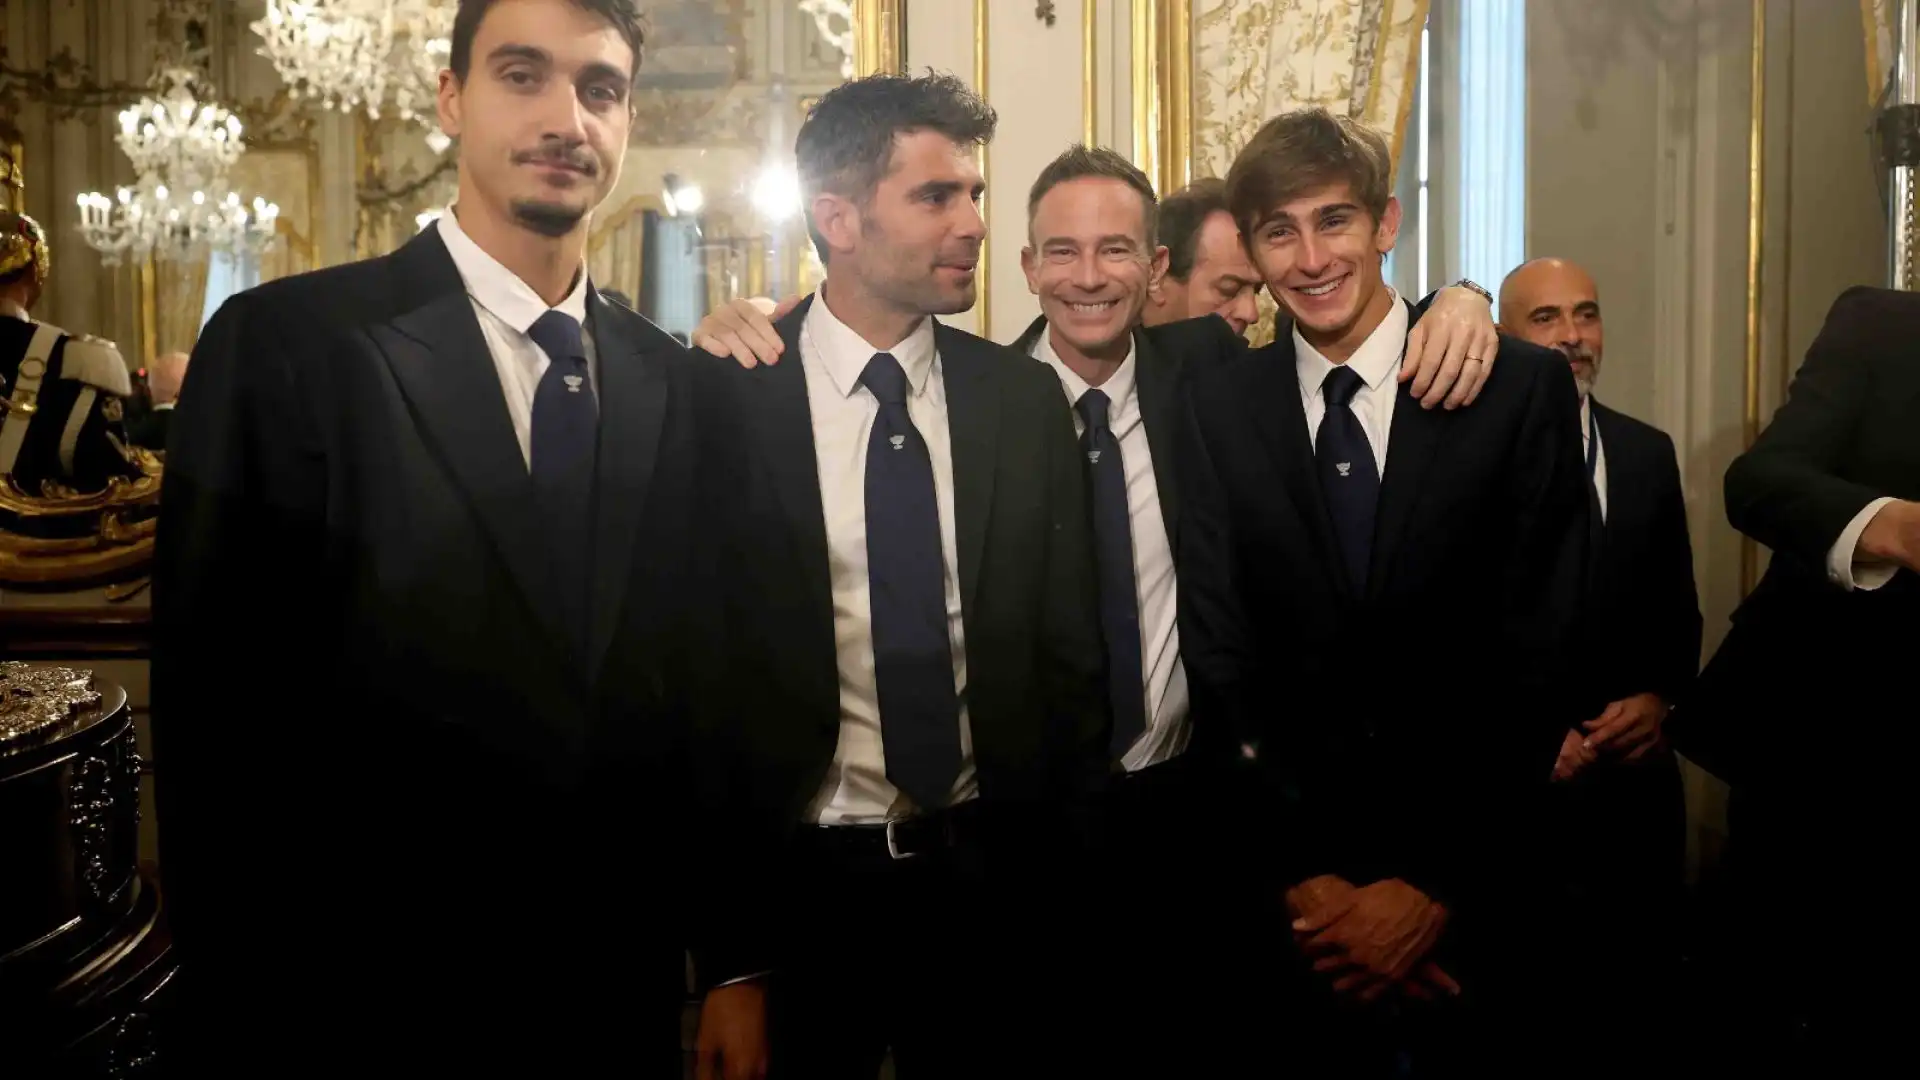 Jannik Sinner ospite del presidente della Repubblica, Sergio Mattarella, insieme agli altri componenti della Nazionale italiana che lo scorso dicembre ha conquistato la Coppa Davis.